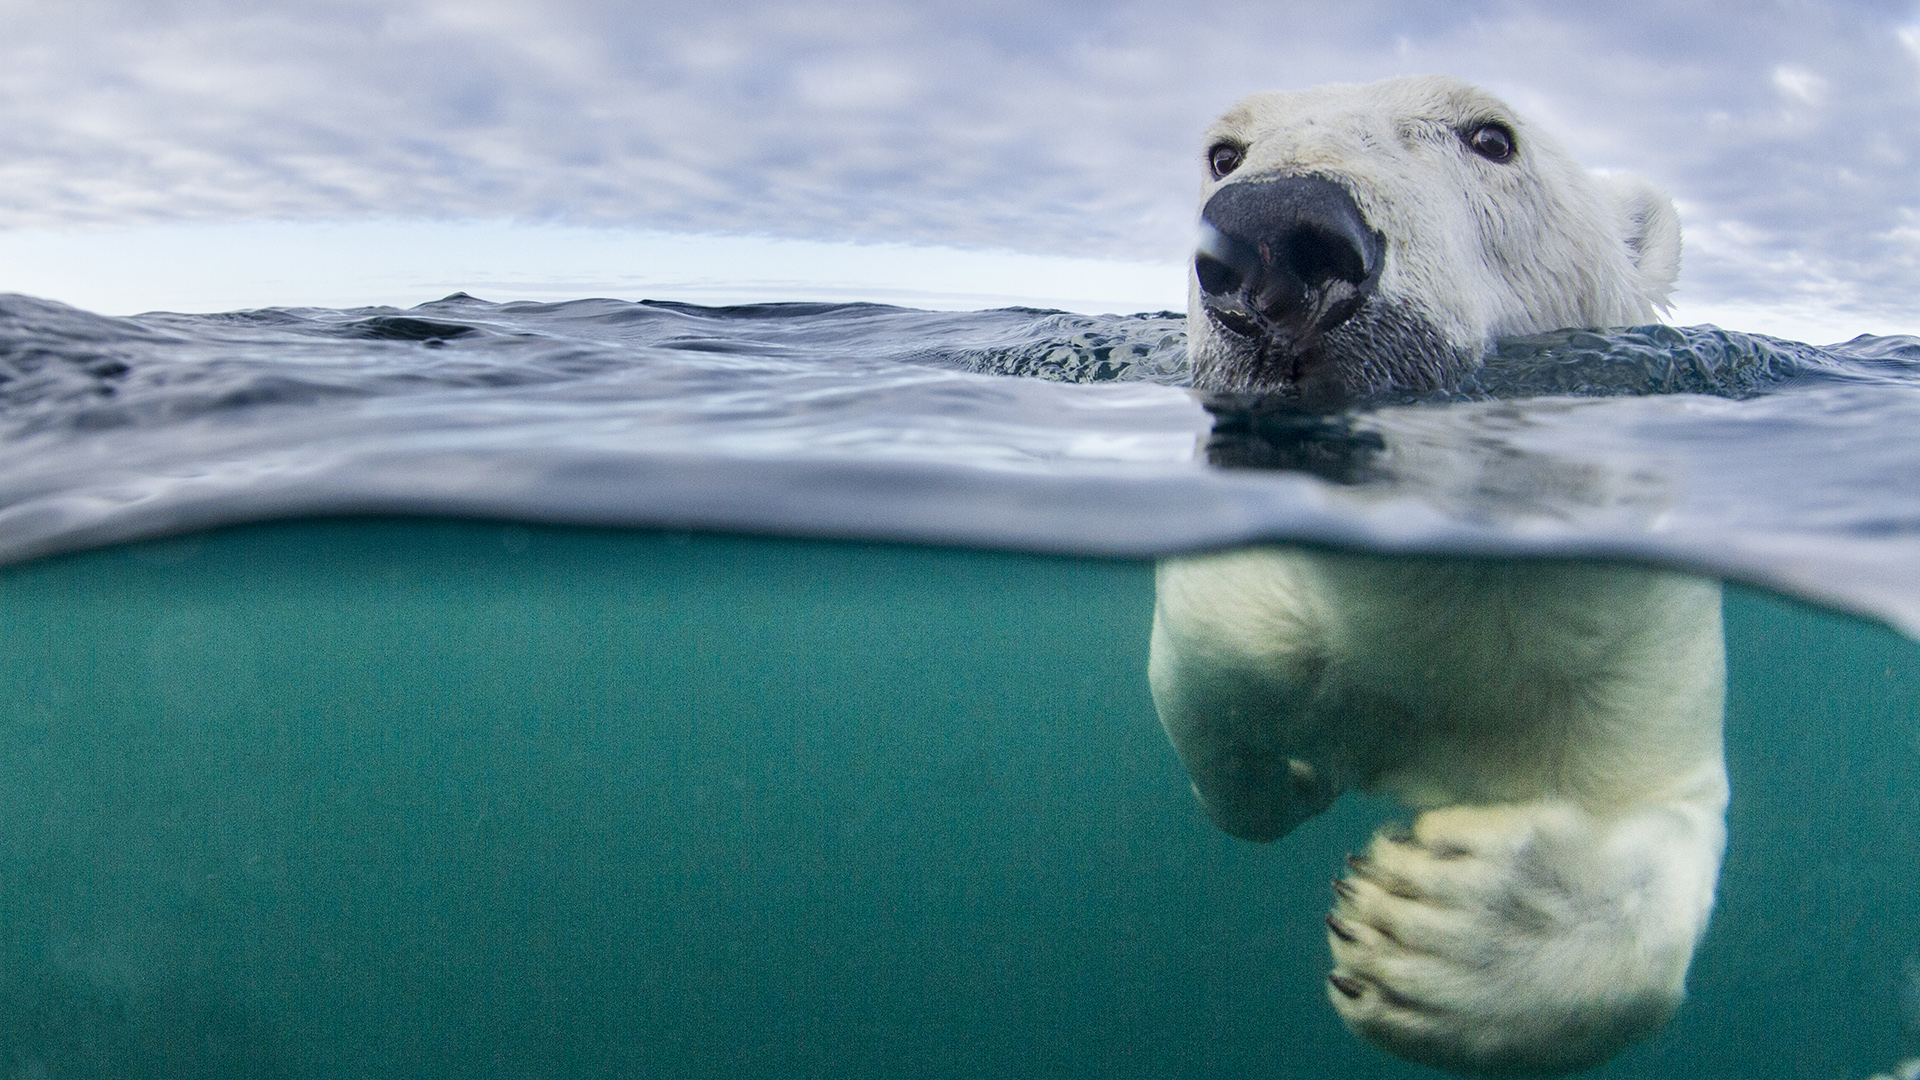 El oso polar es una de las especies que se encuentra en mayor peligro de extinción debido a la destrucción de sus hábitats a raíz del calentamiento global (Getty Images)